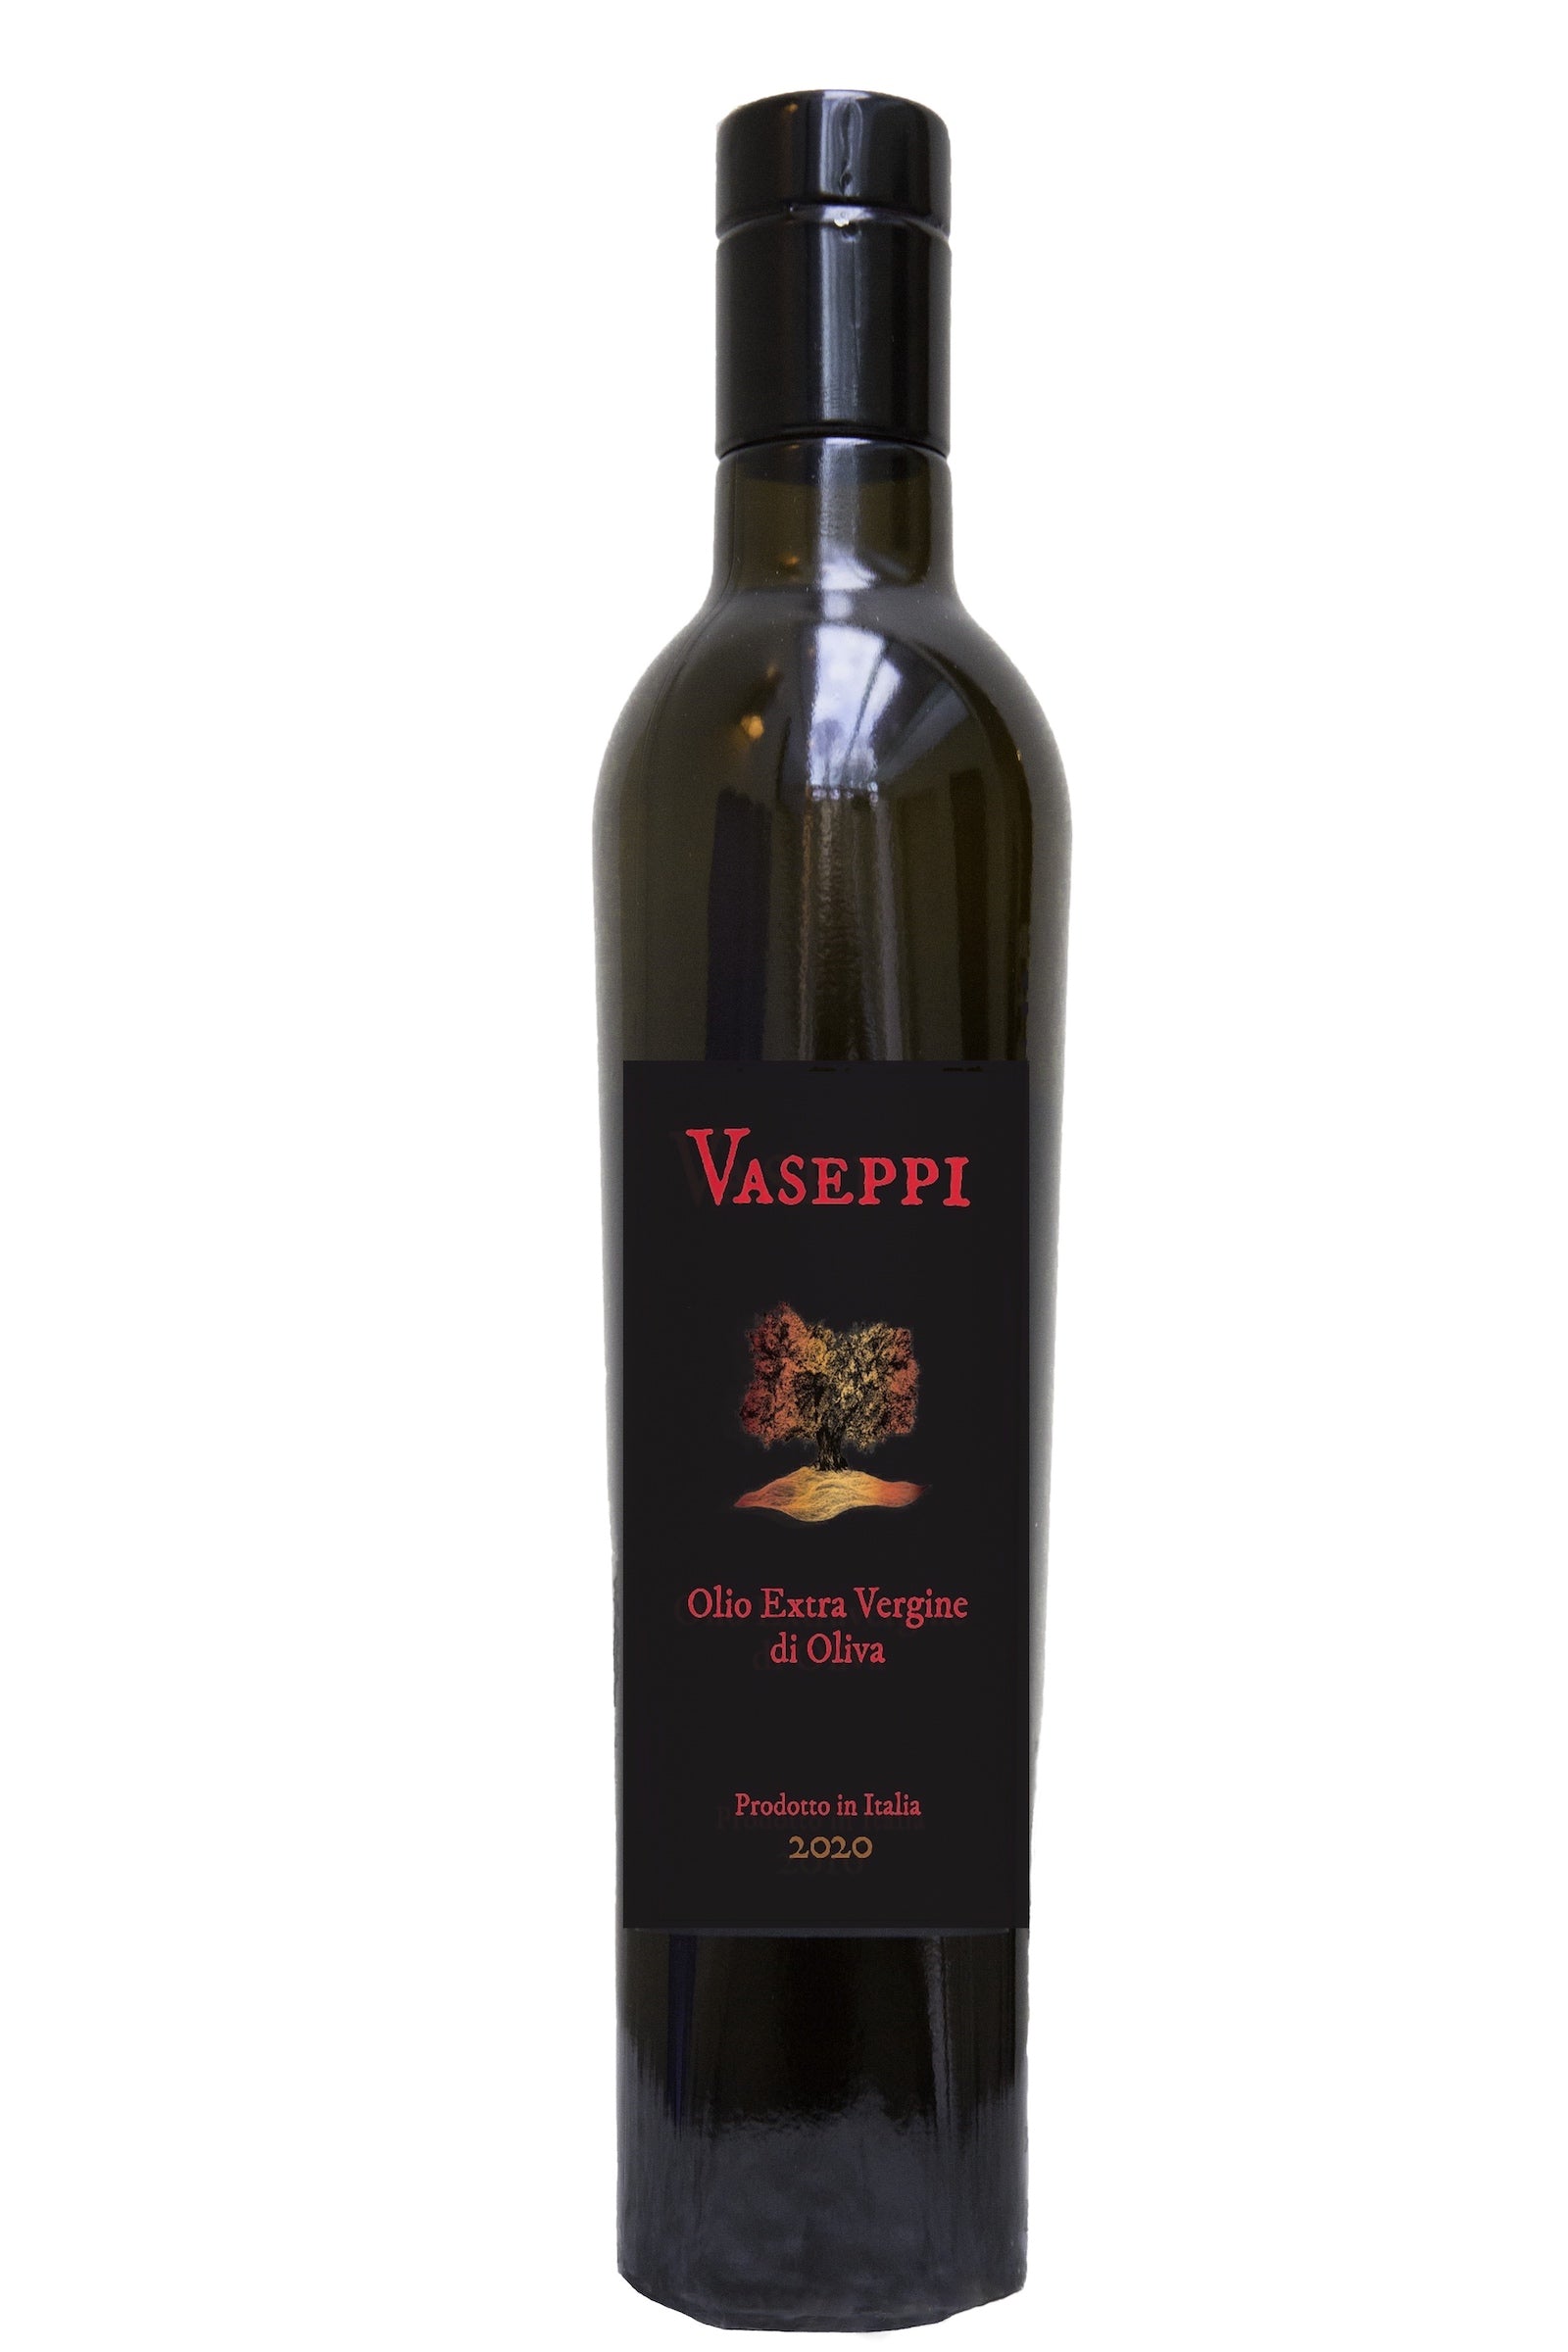 Vaseppi (2020, 6 bottle case) - Borgo Vaseppi